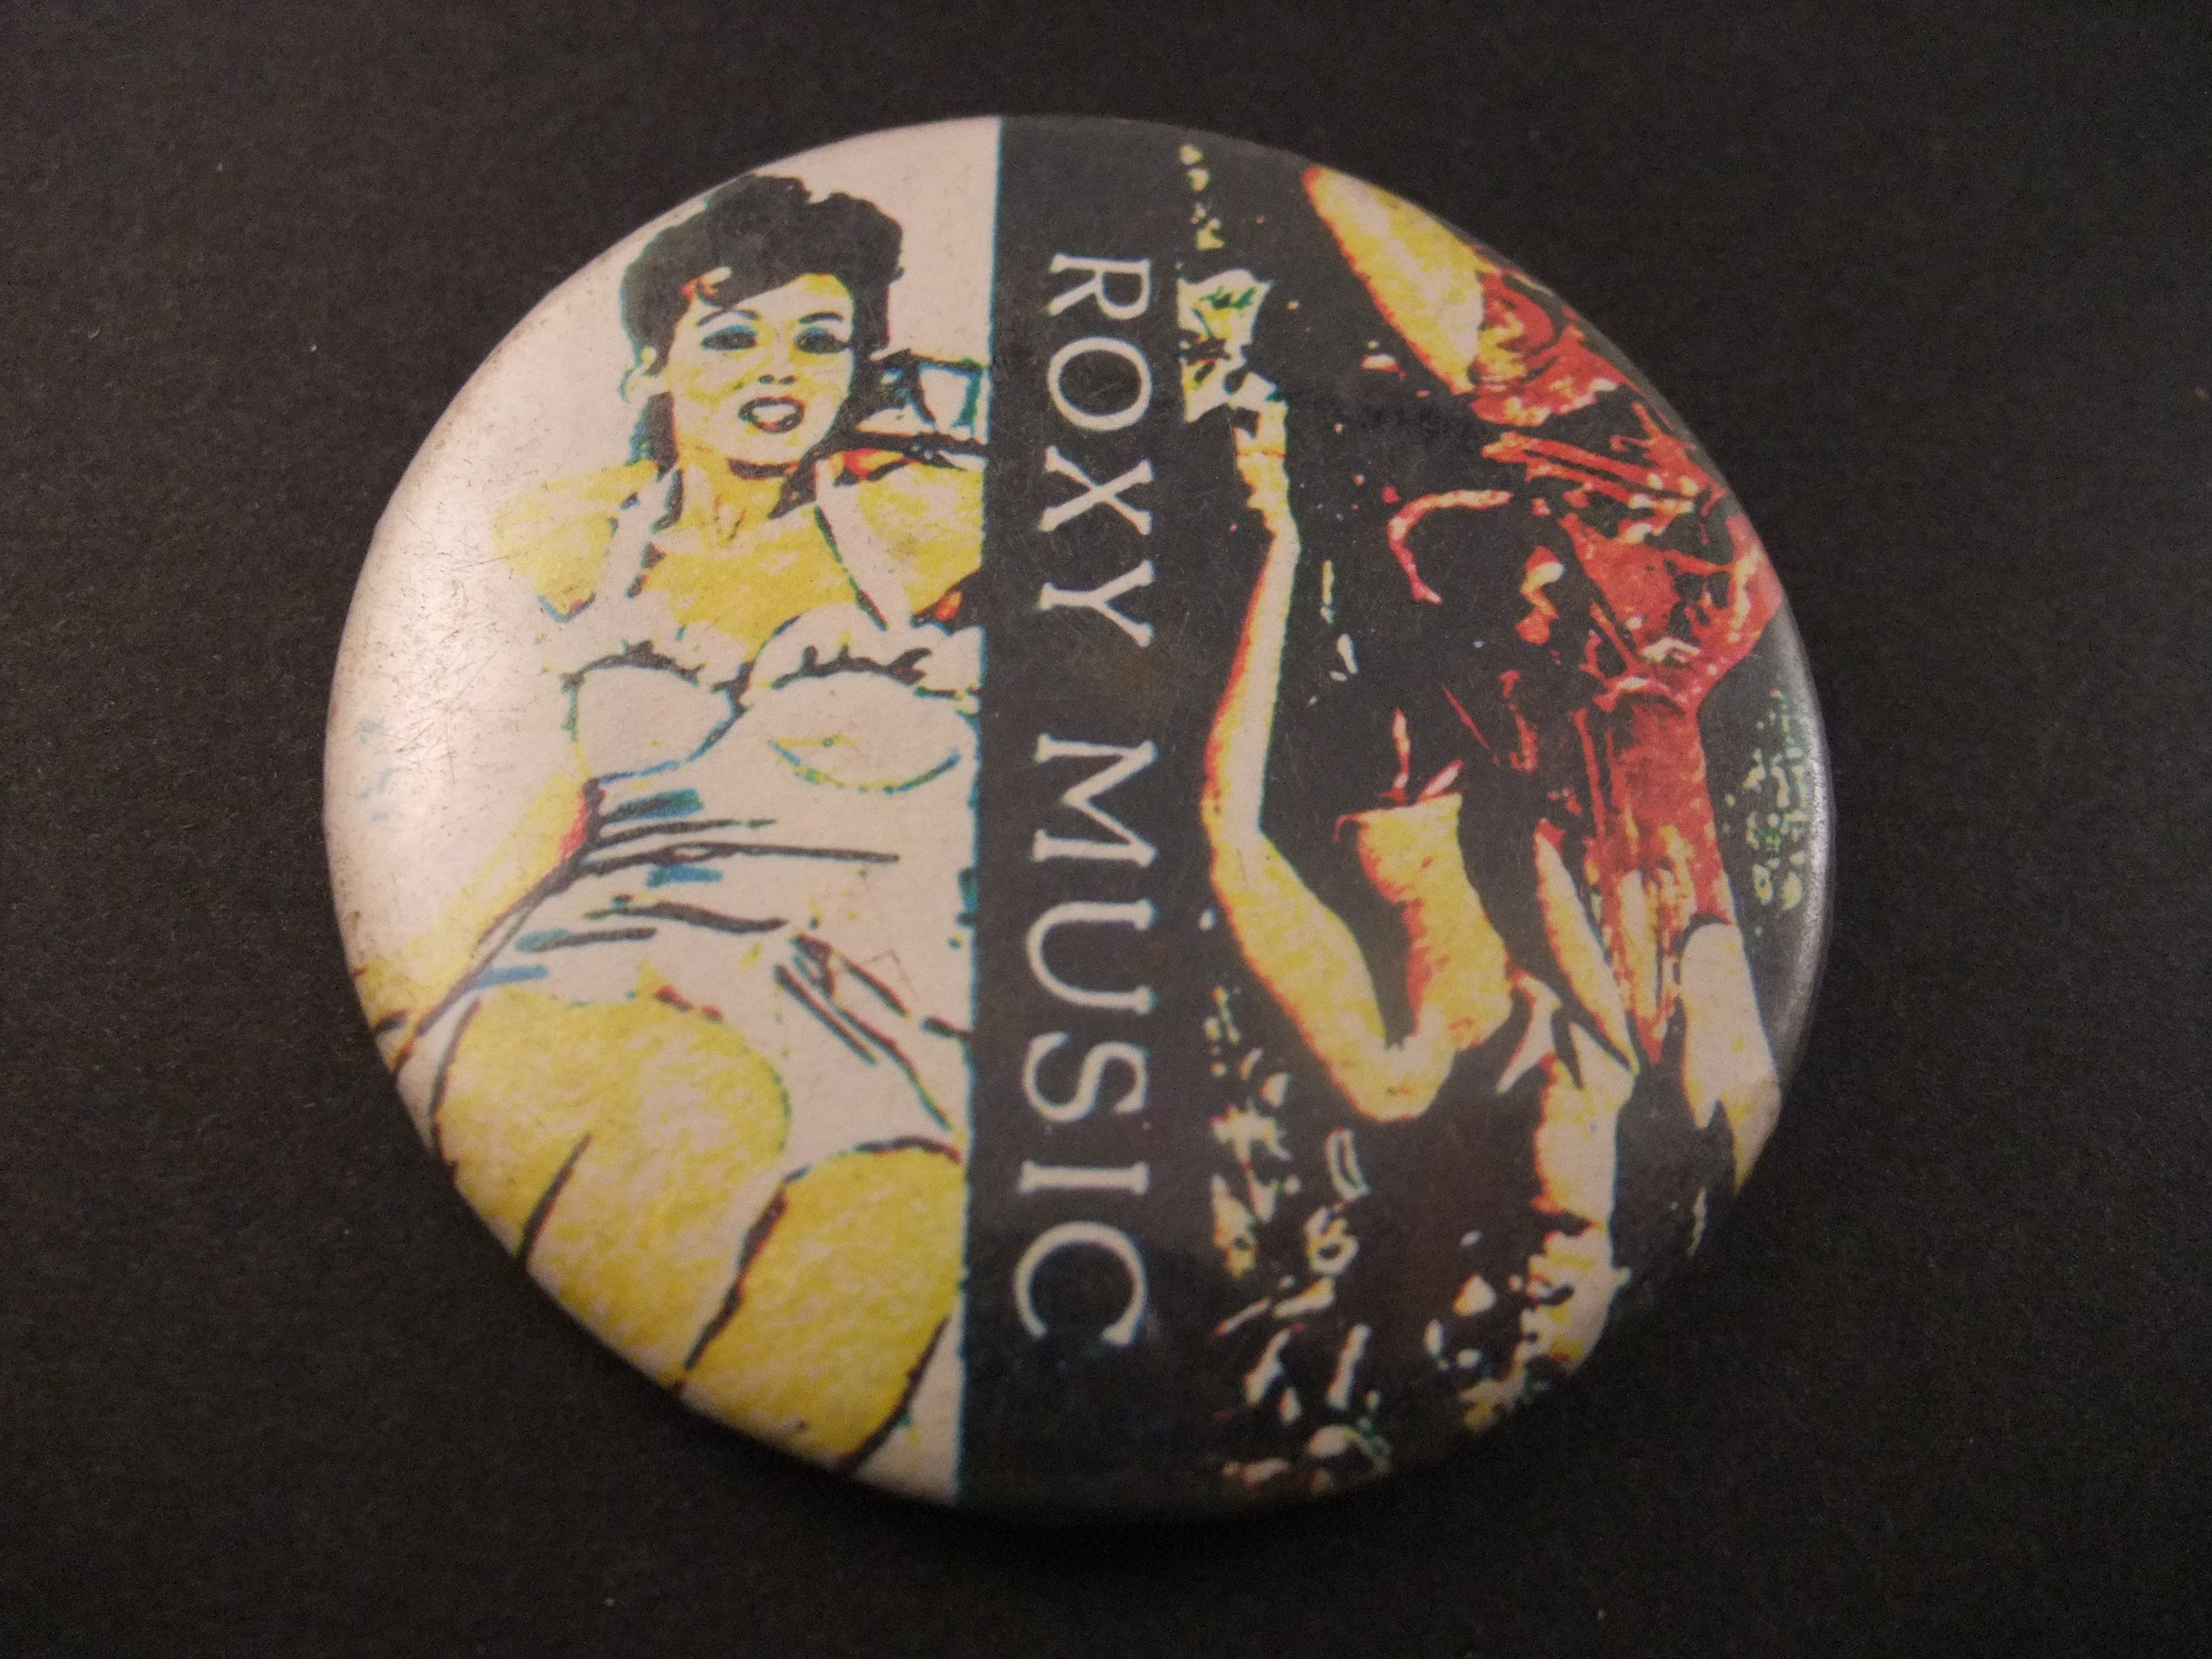 Roxy Music Britse rockgroep mooie dame